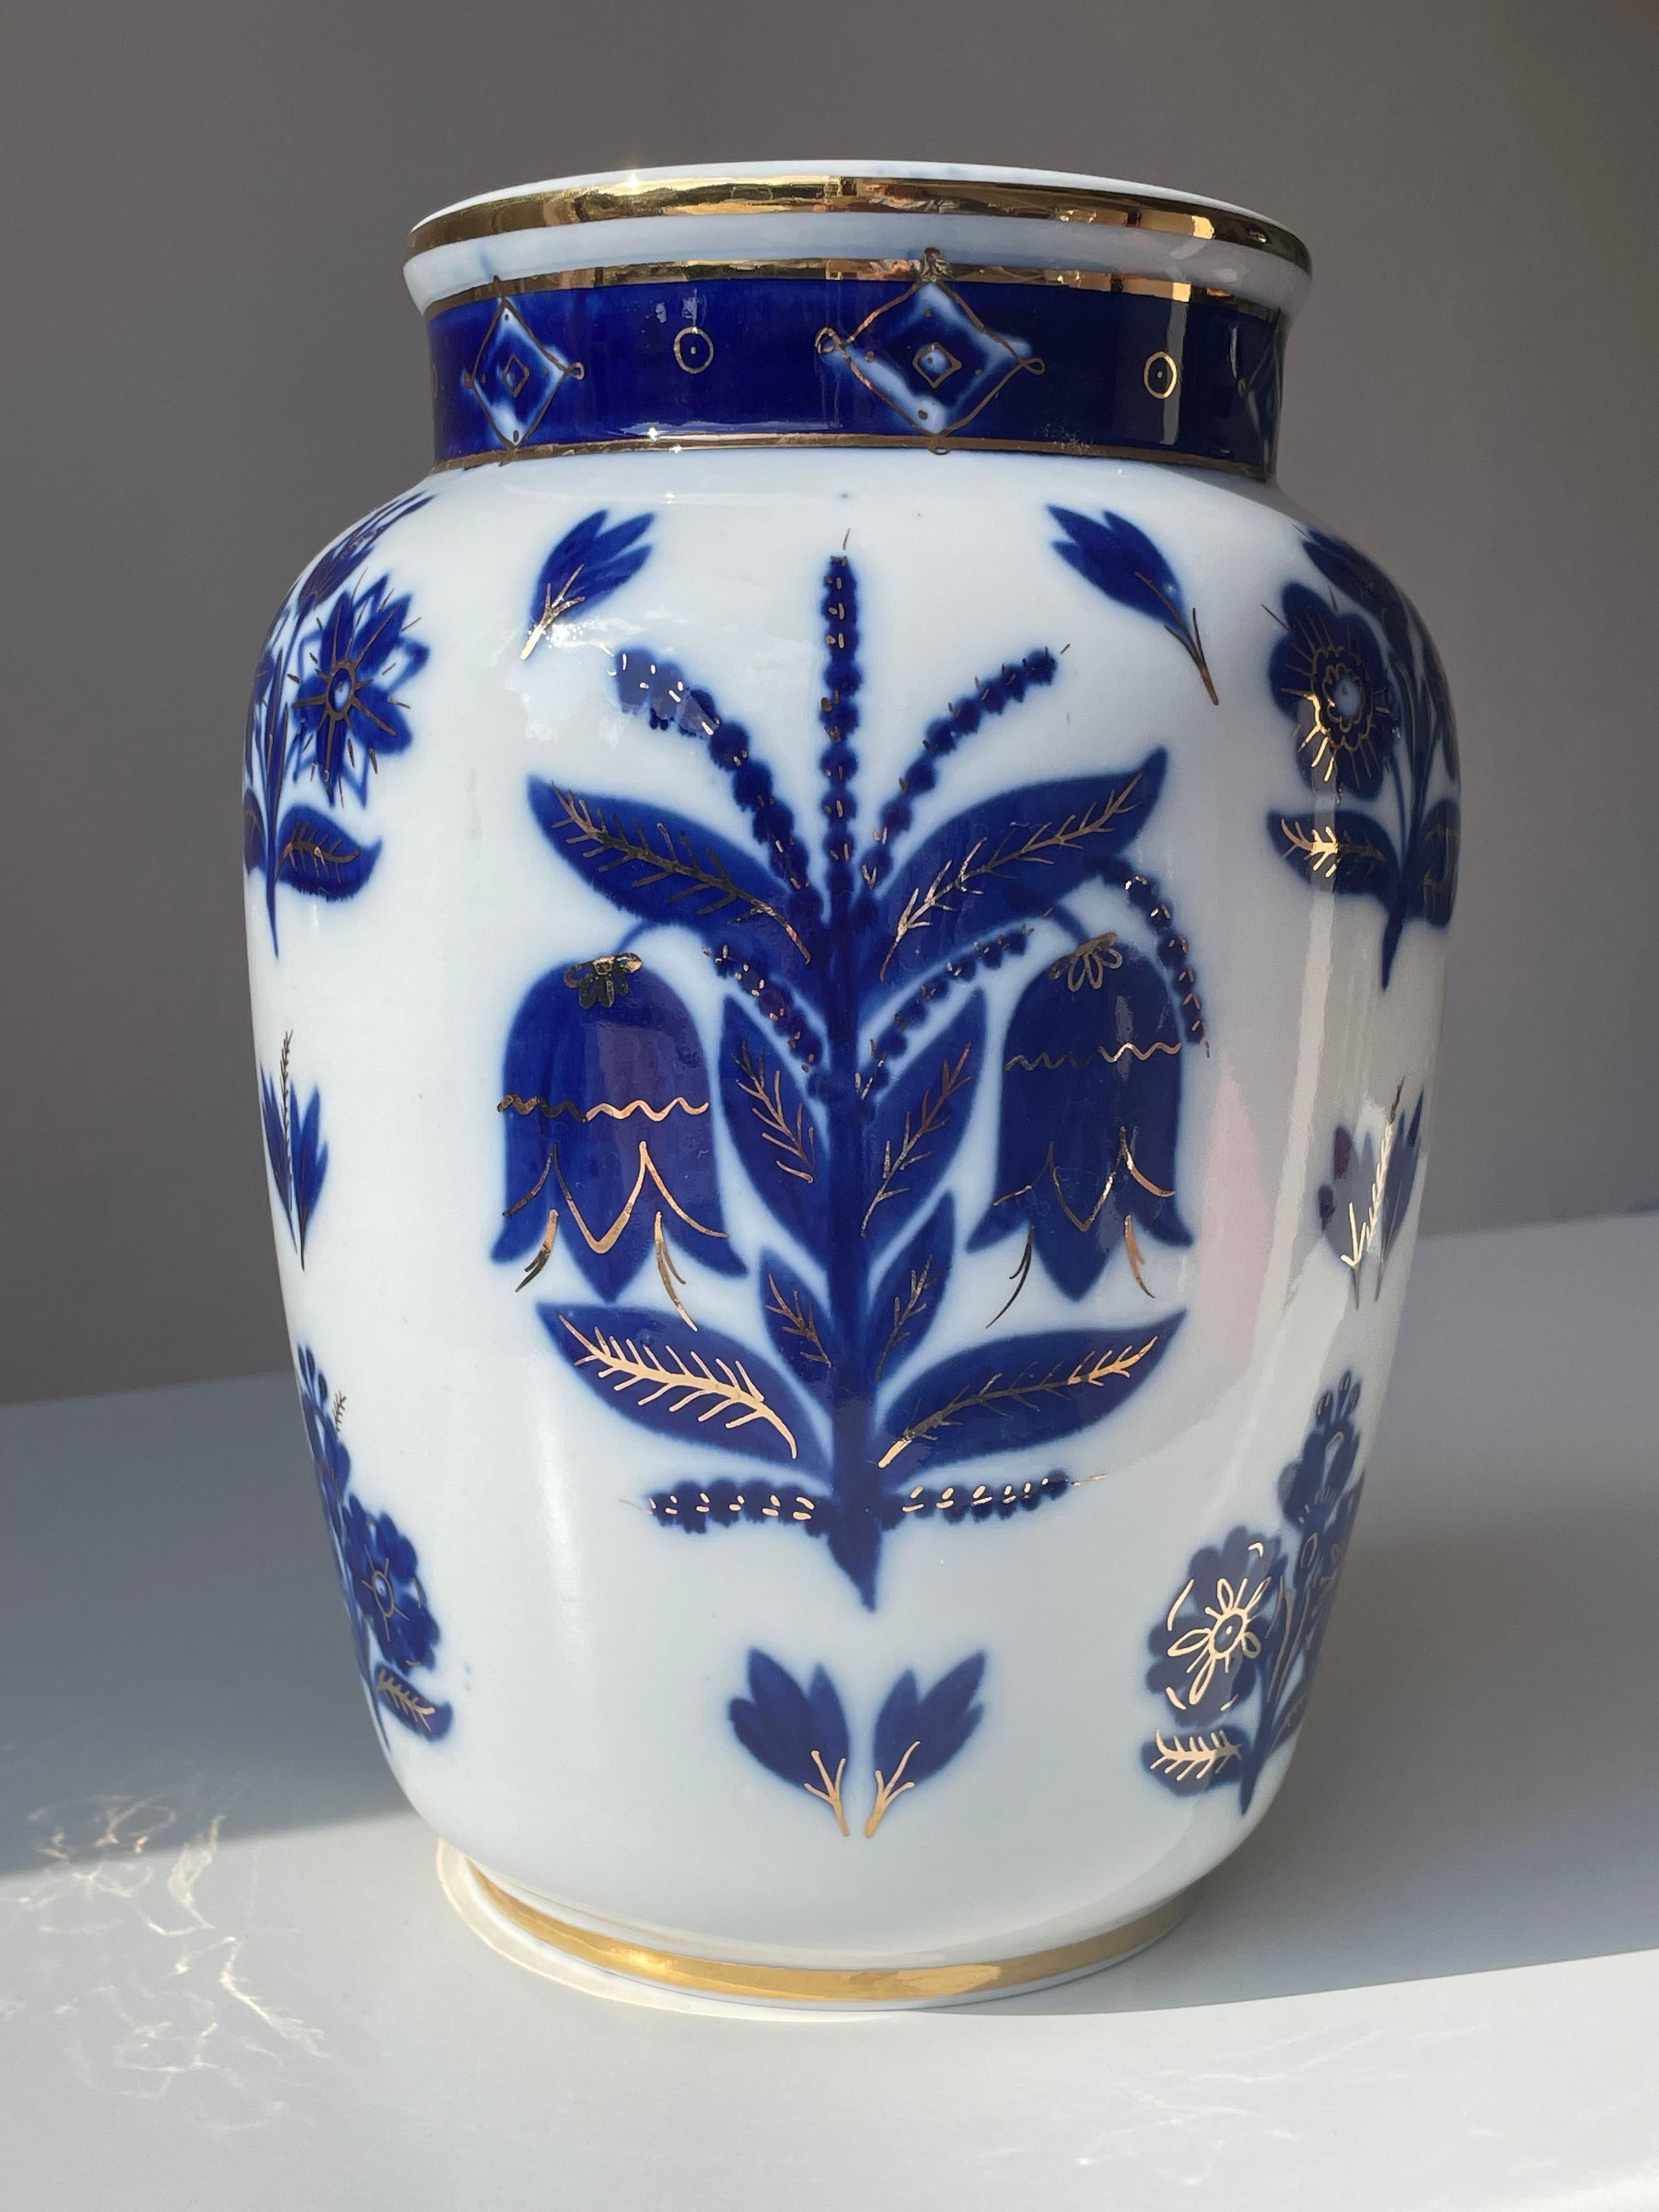 Große russische Vase aus weißem, blauem und goldenem Blumenporzellan, hergestellt in den 1950er Jahren von der 1744 gegründeten Lomonossow-Porzellanfabrik. Weich geformte, organische Vase aus der Jahrhundertmitte, von Hand dekoriert mit großen,